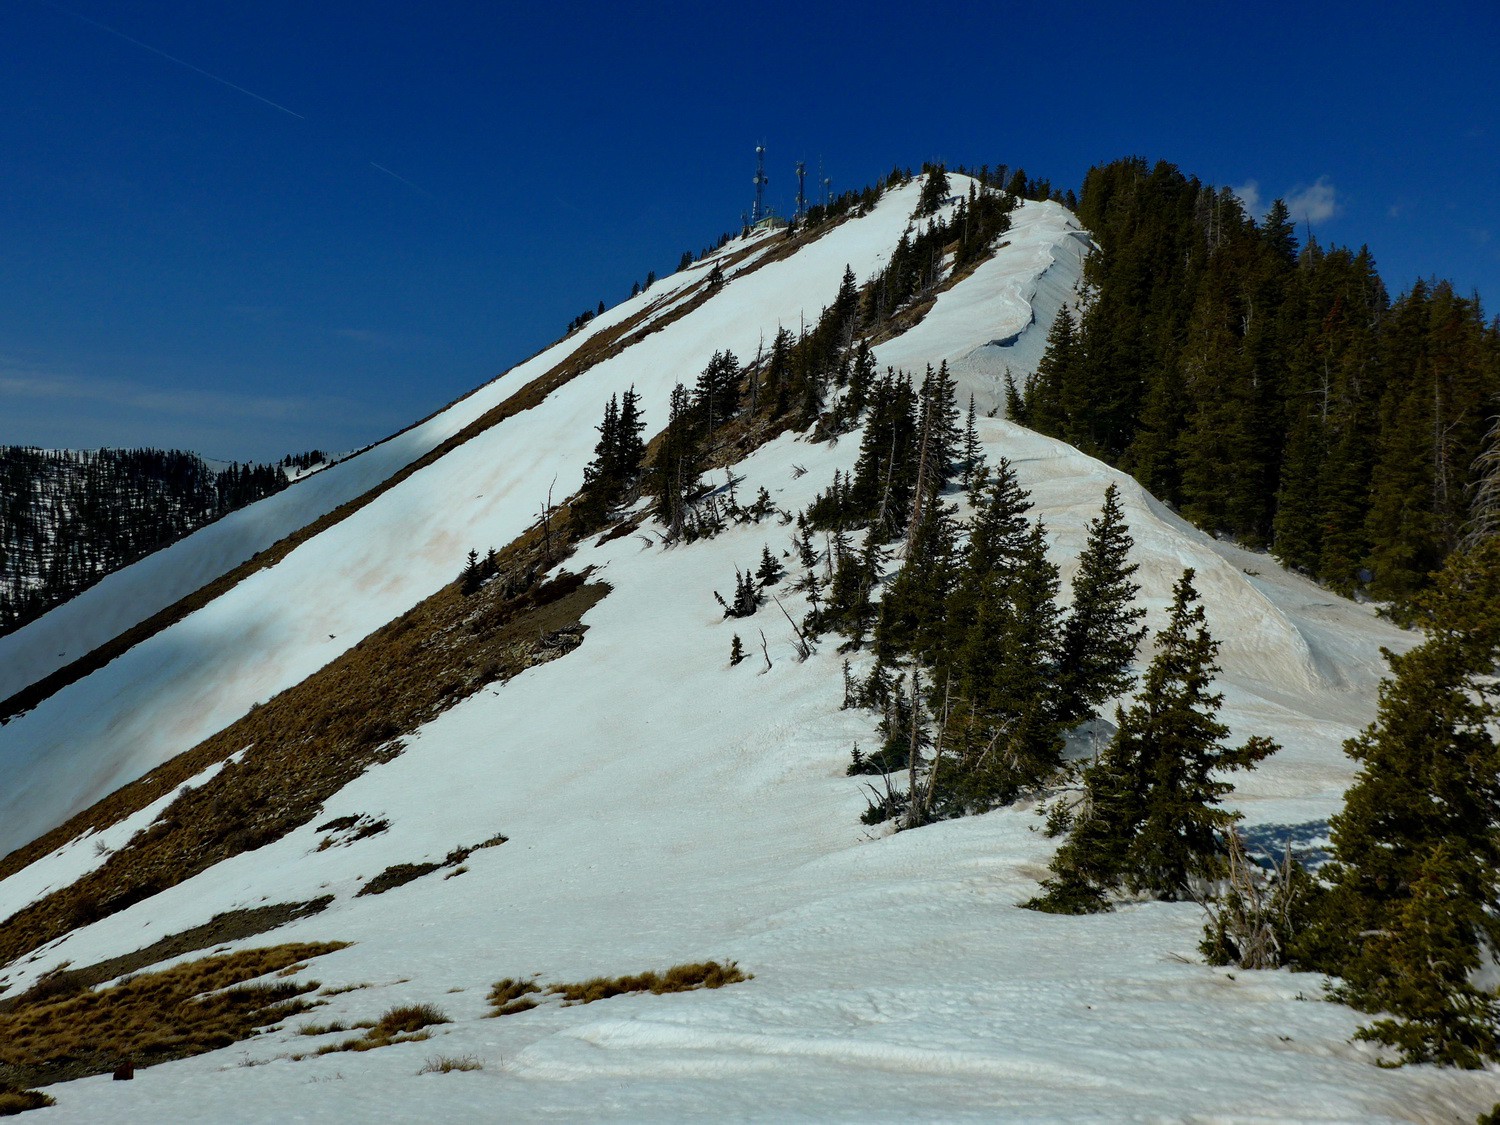 Summit of 3448 meters high Abajo Peak